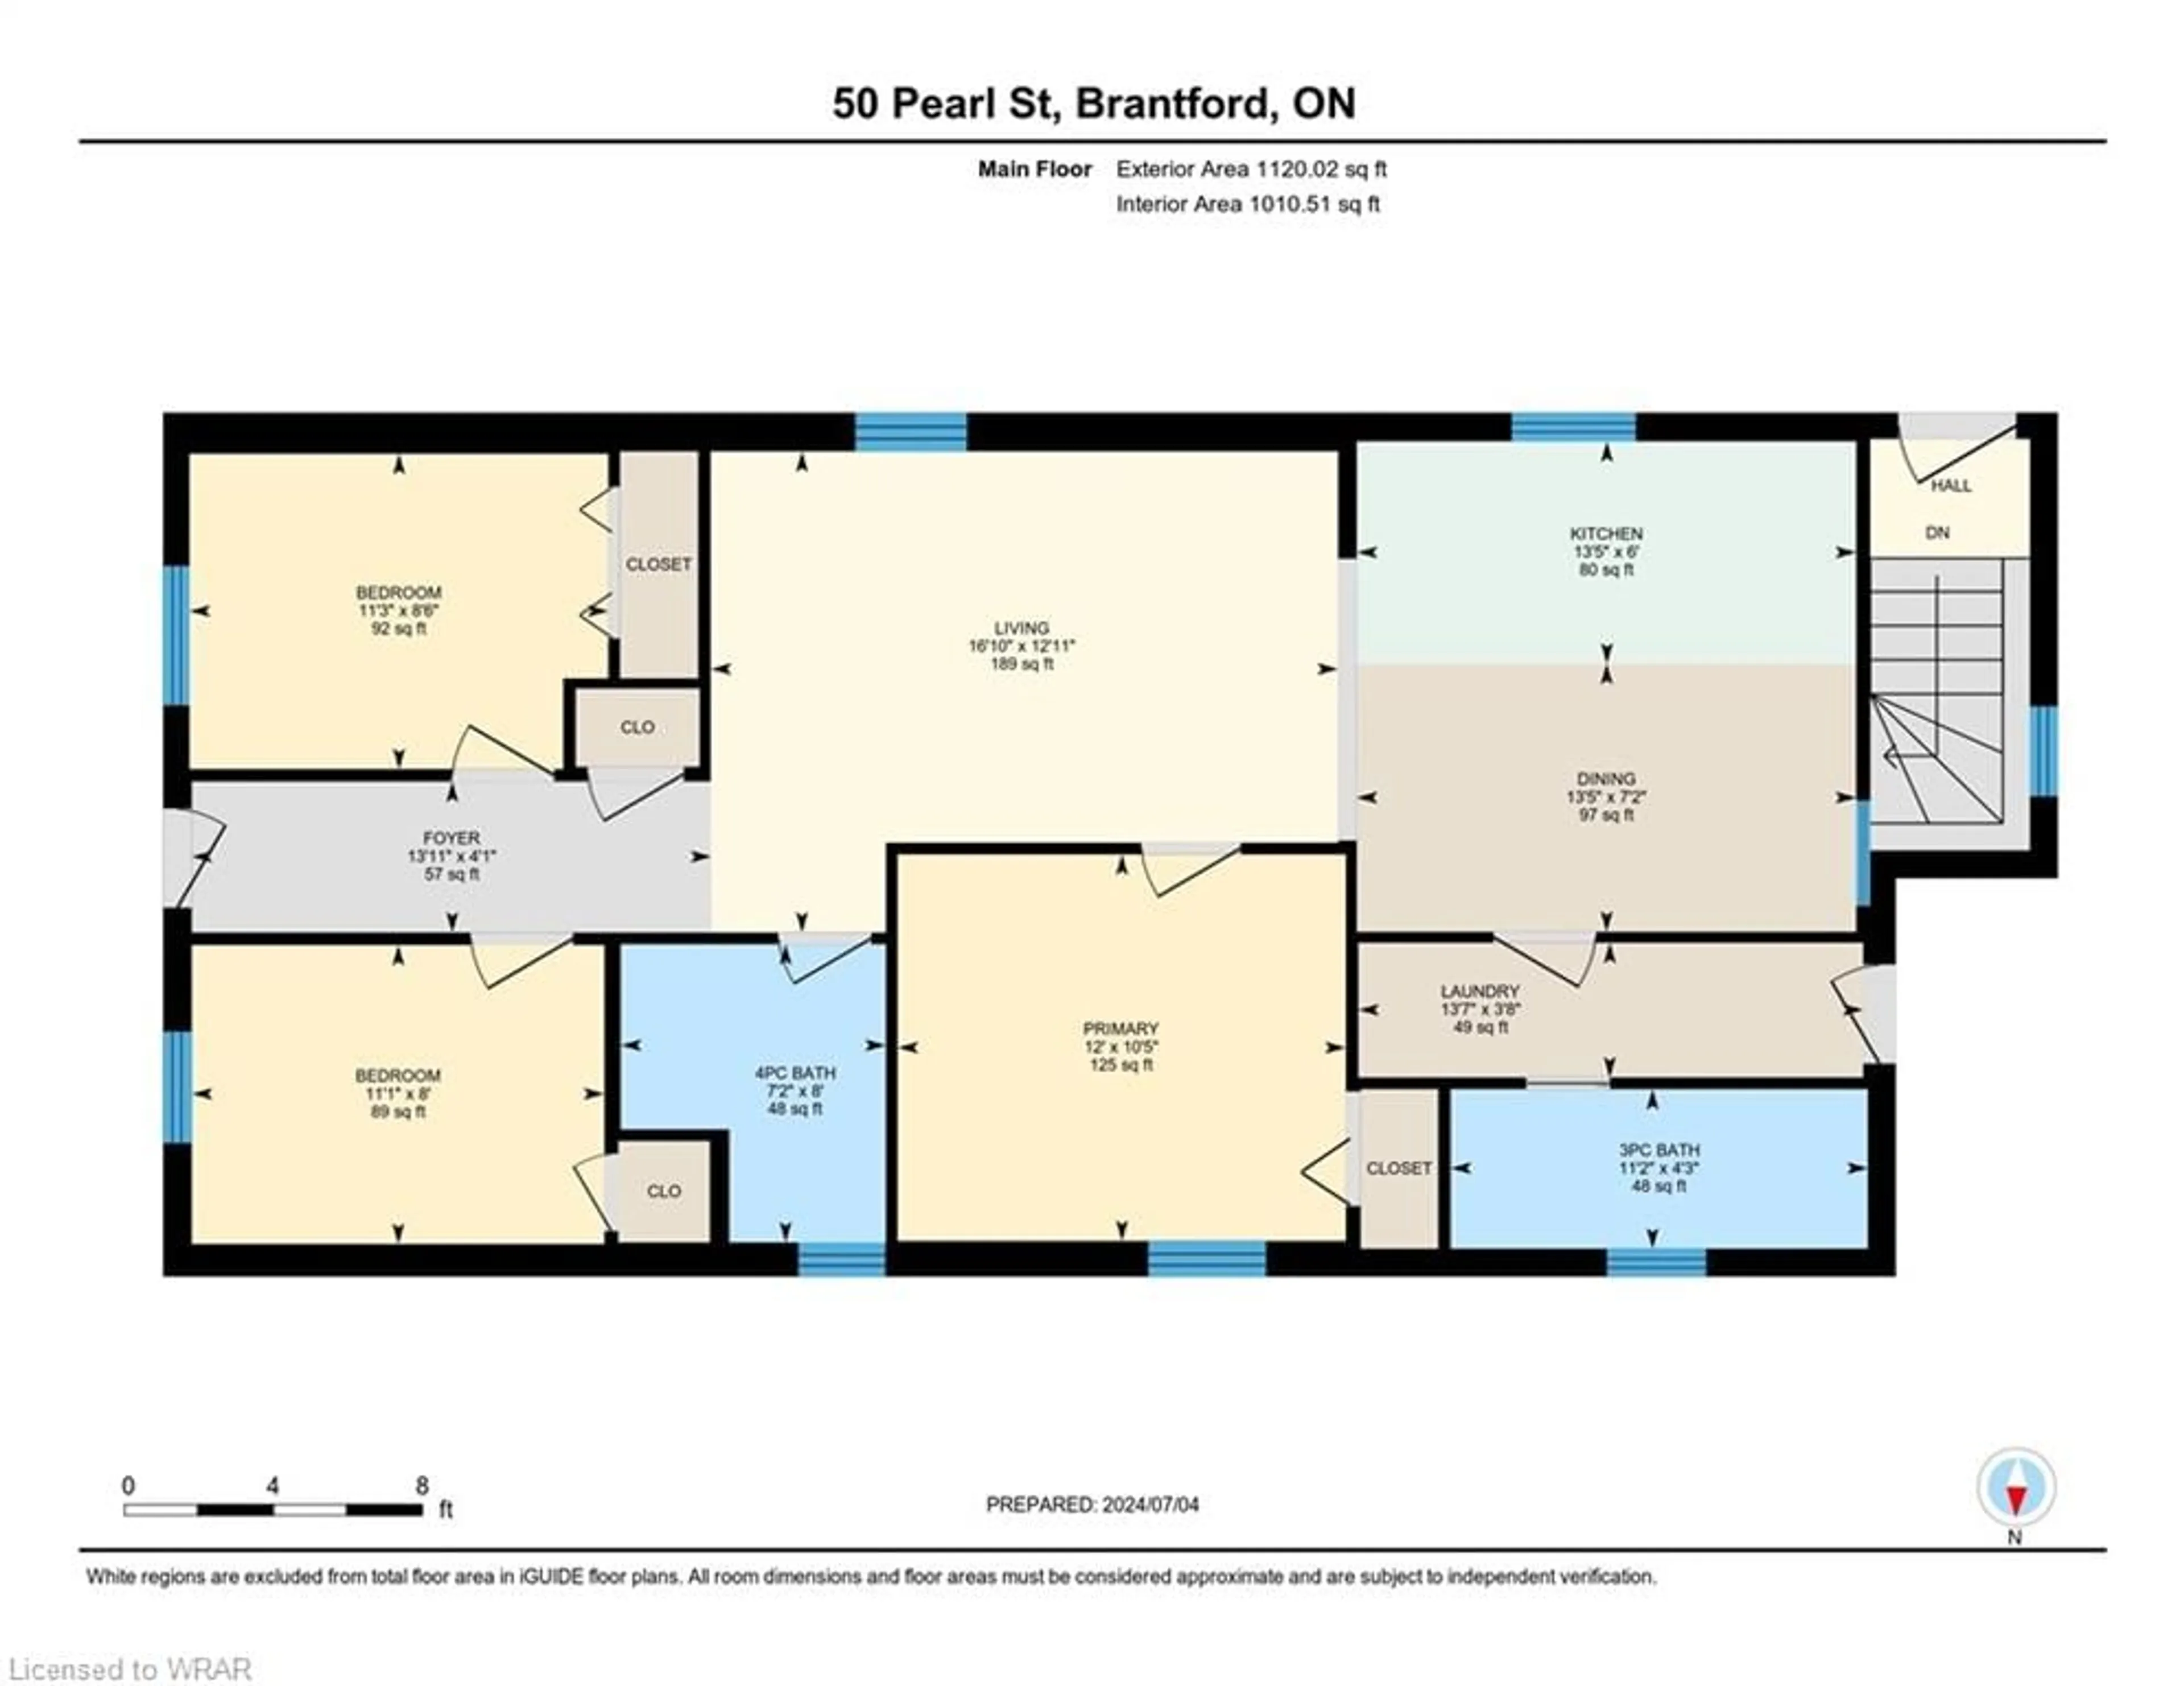 Floor plan for 50 Pearl St, Brantford Ontario N3T 3N6